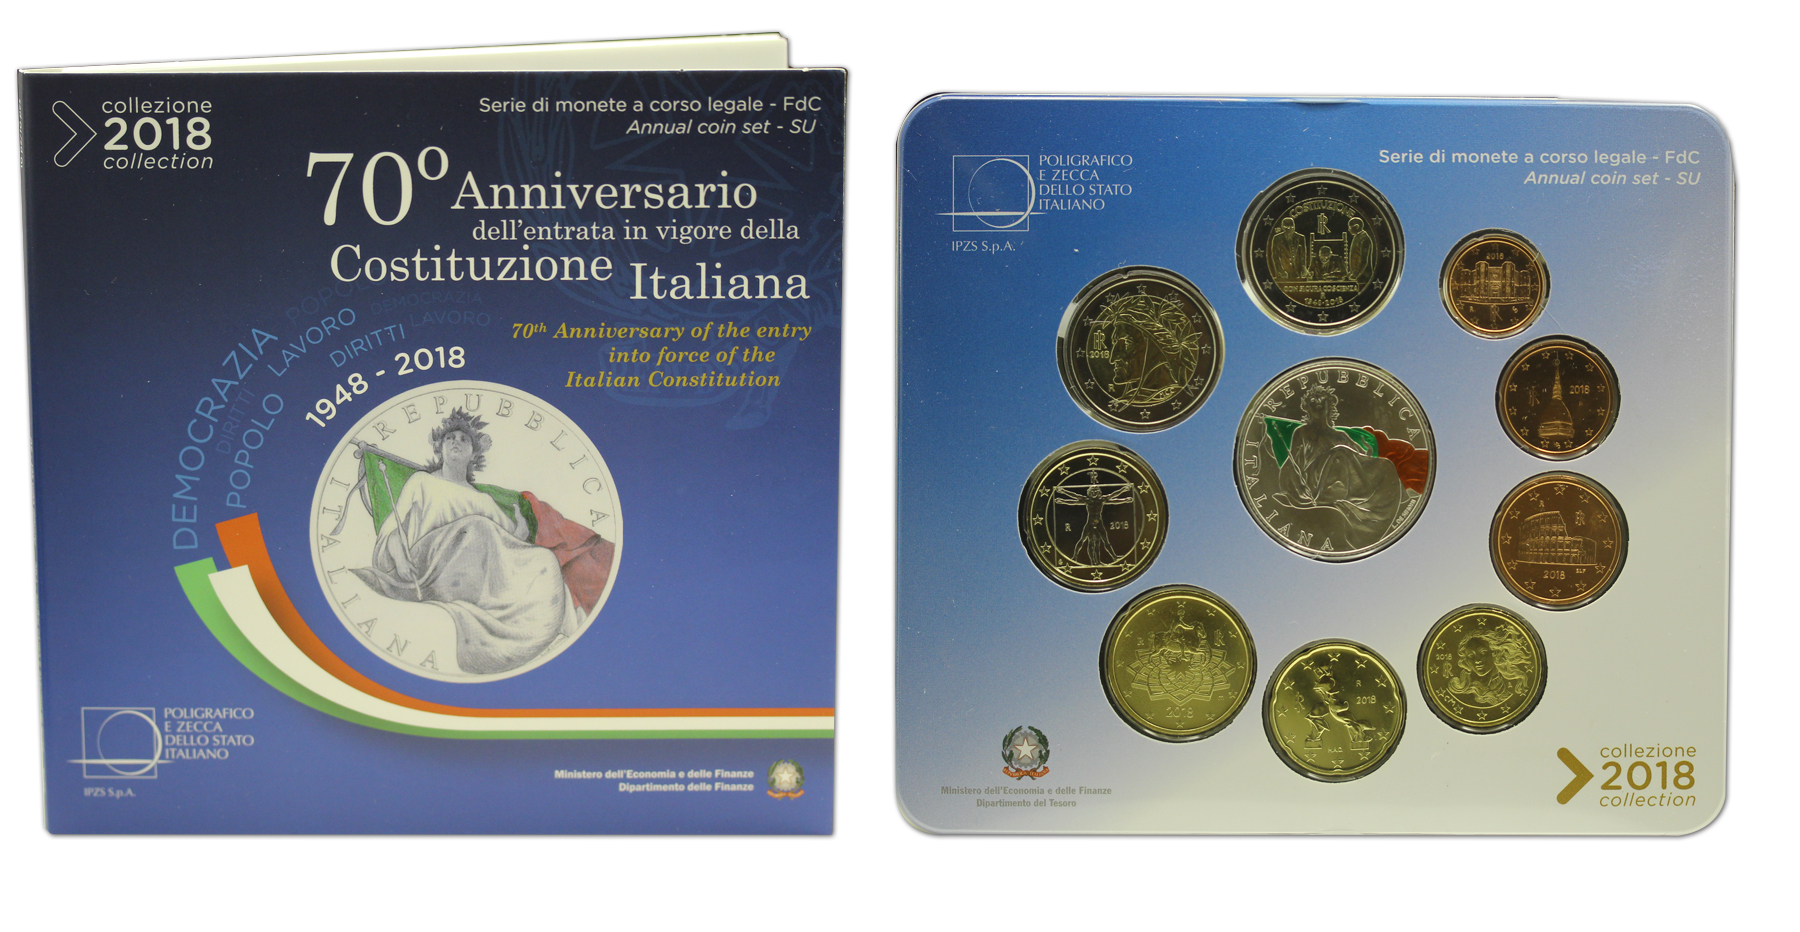 Serie completa di 10 monete in confezione ufficiale con moneta da 5 euro in Ag "70 Anniv. Costituzione Italiana"